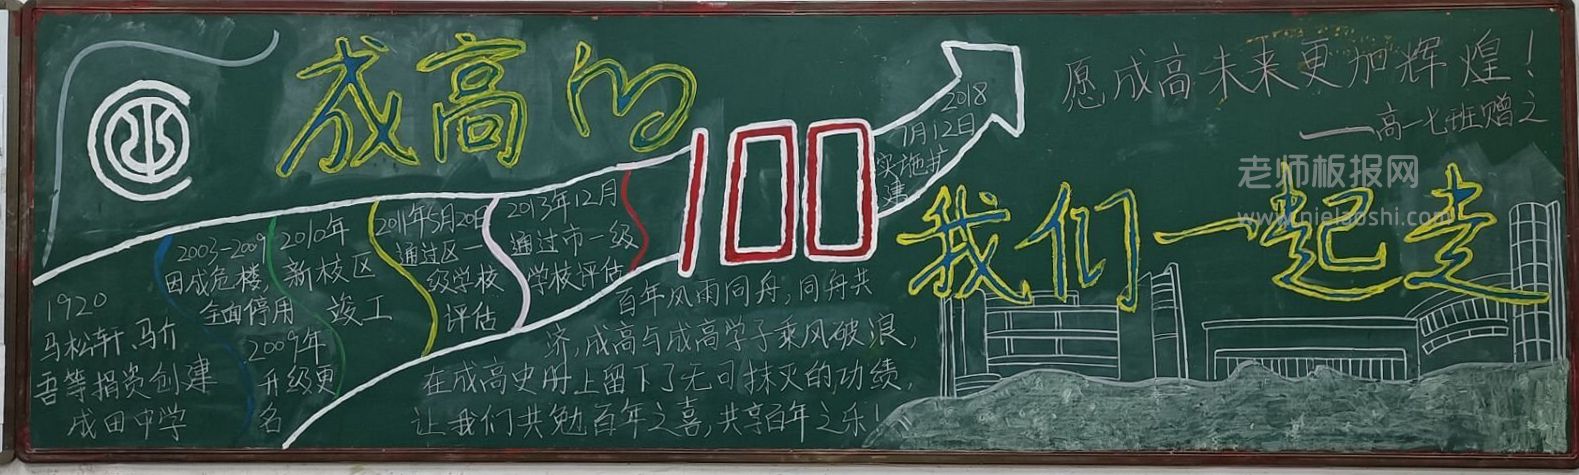 成田高级中学100周年校庆黑板报图片